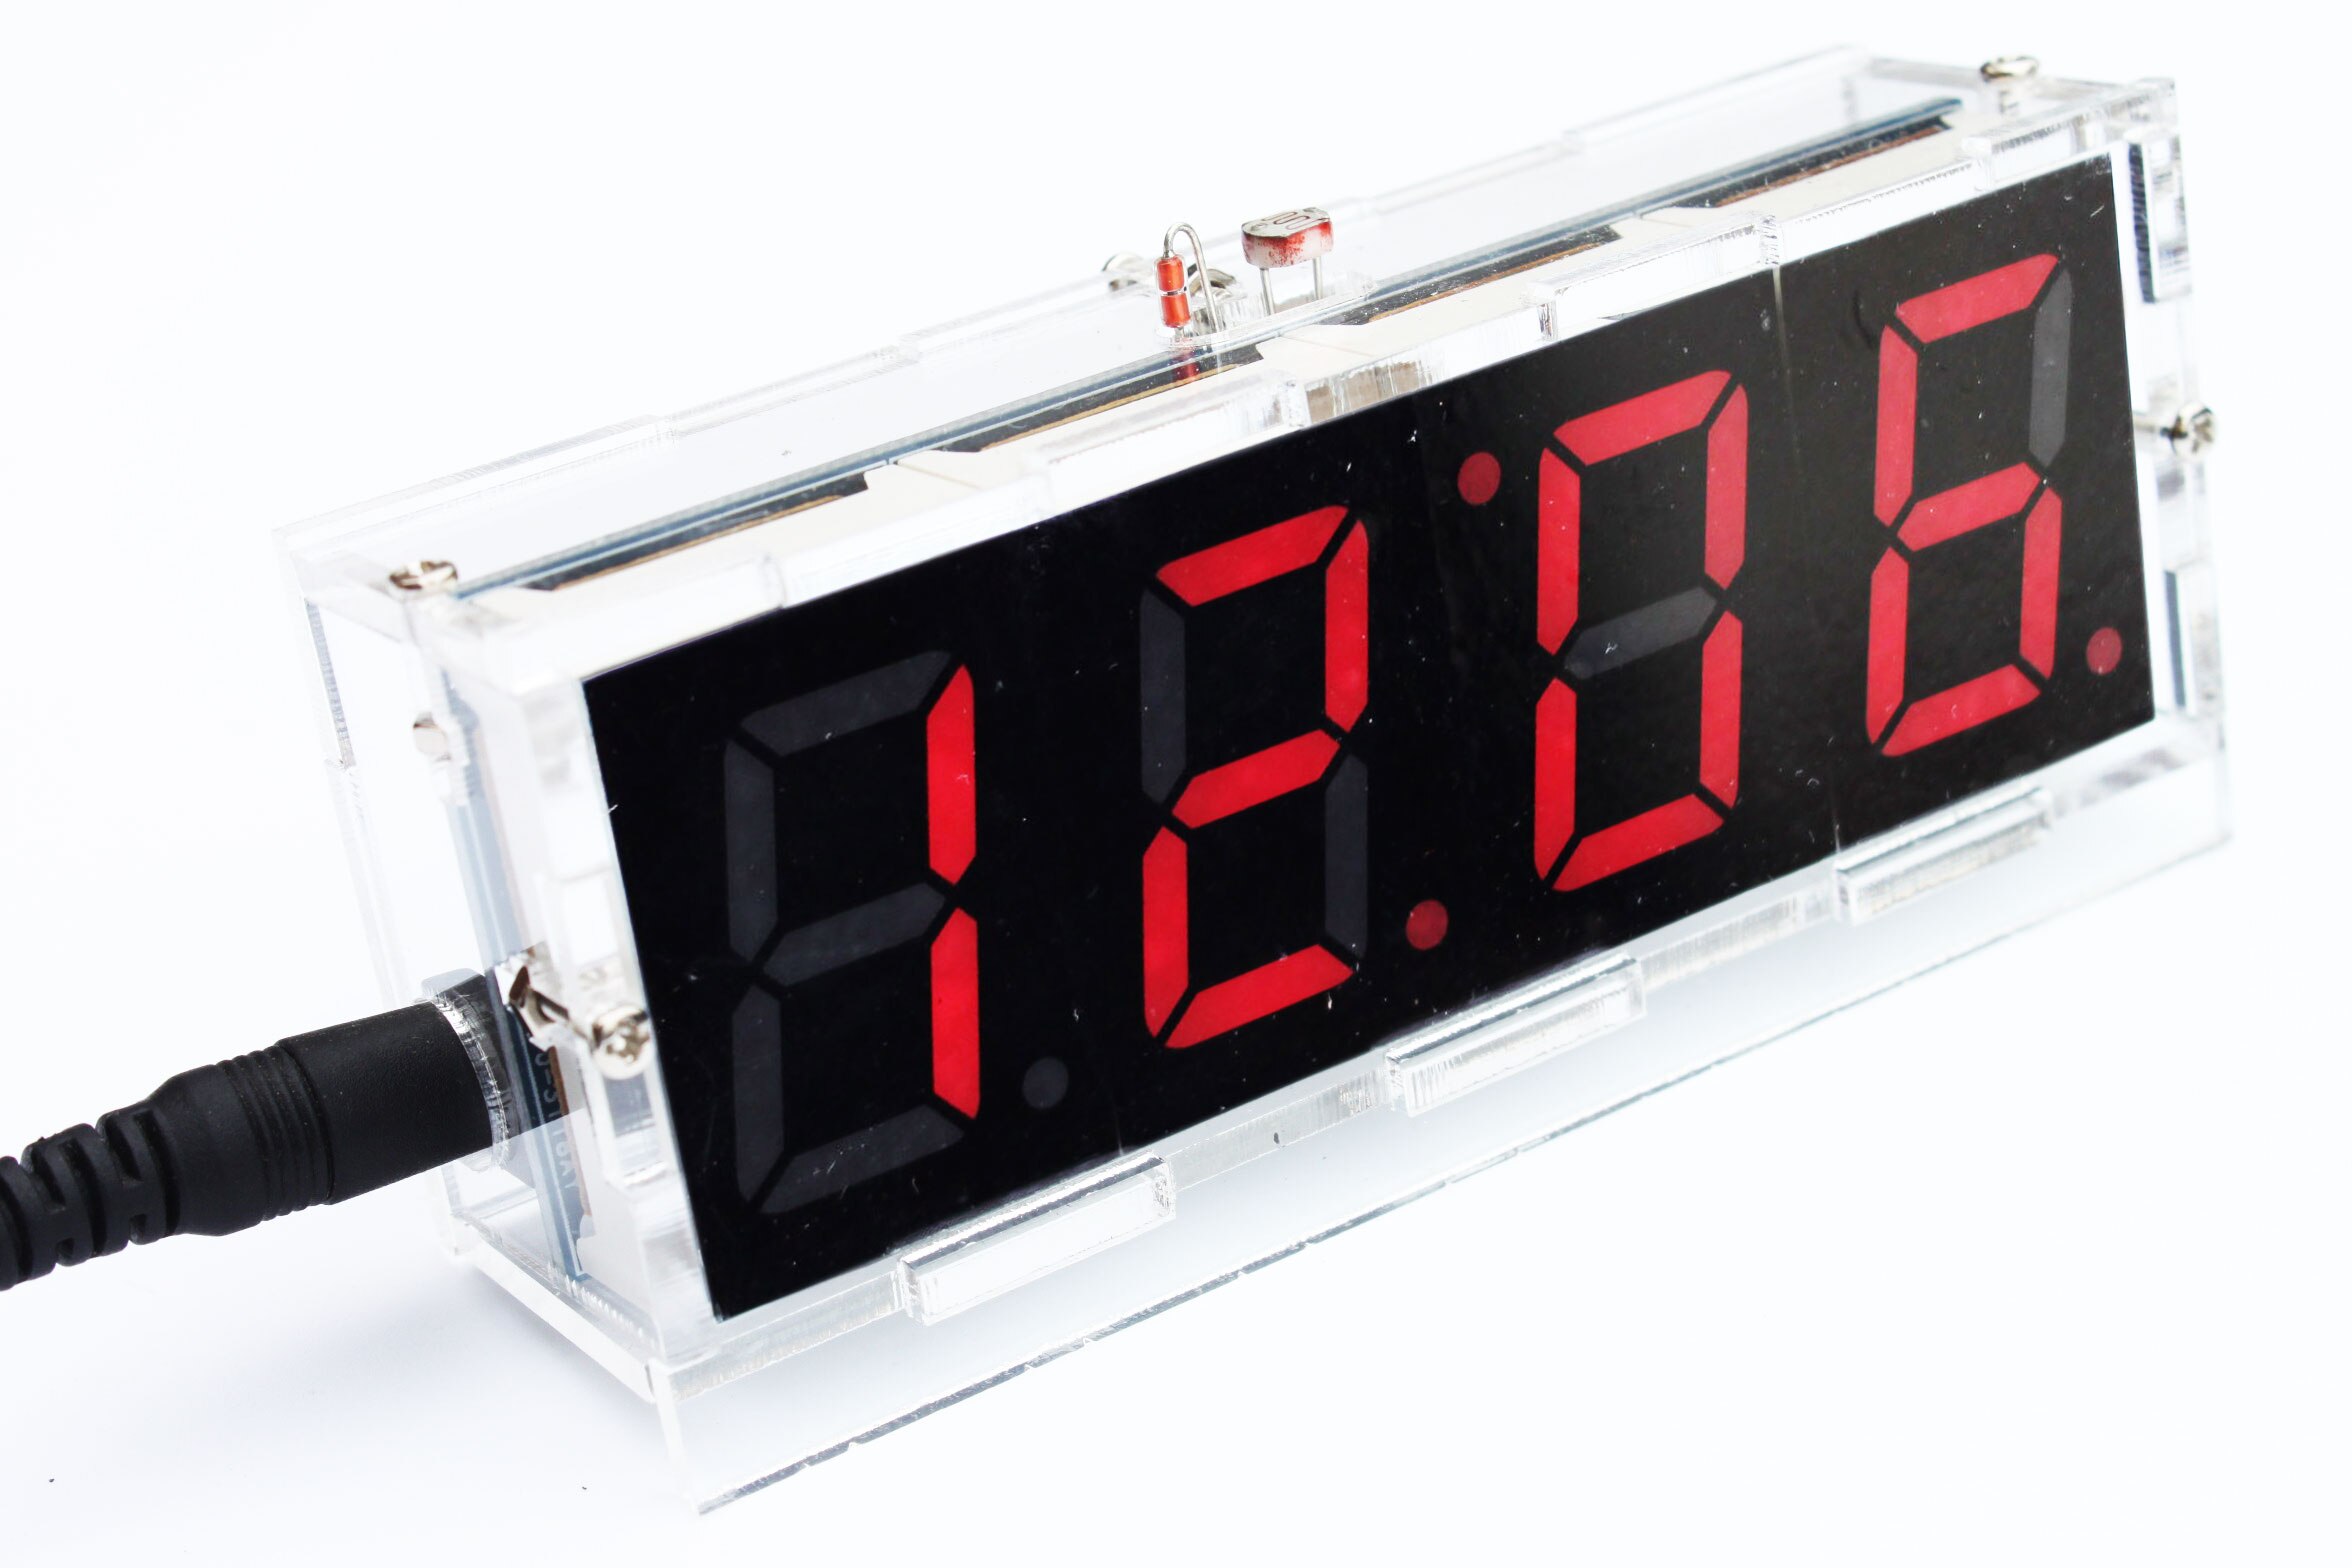 4-- cifret diy digital led clock kit lysstyring temperatur dato display med transparent diy kit – Grandado